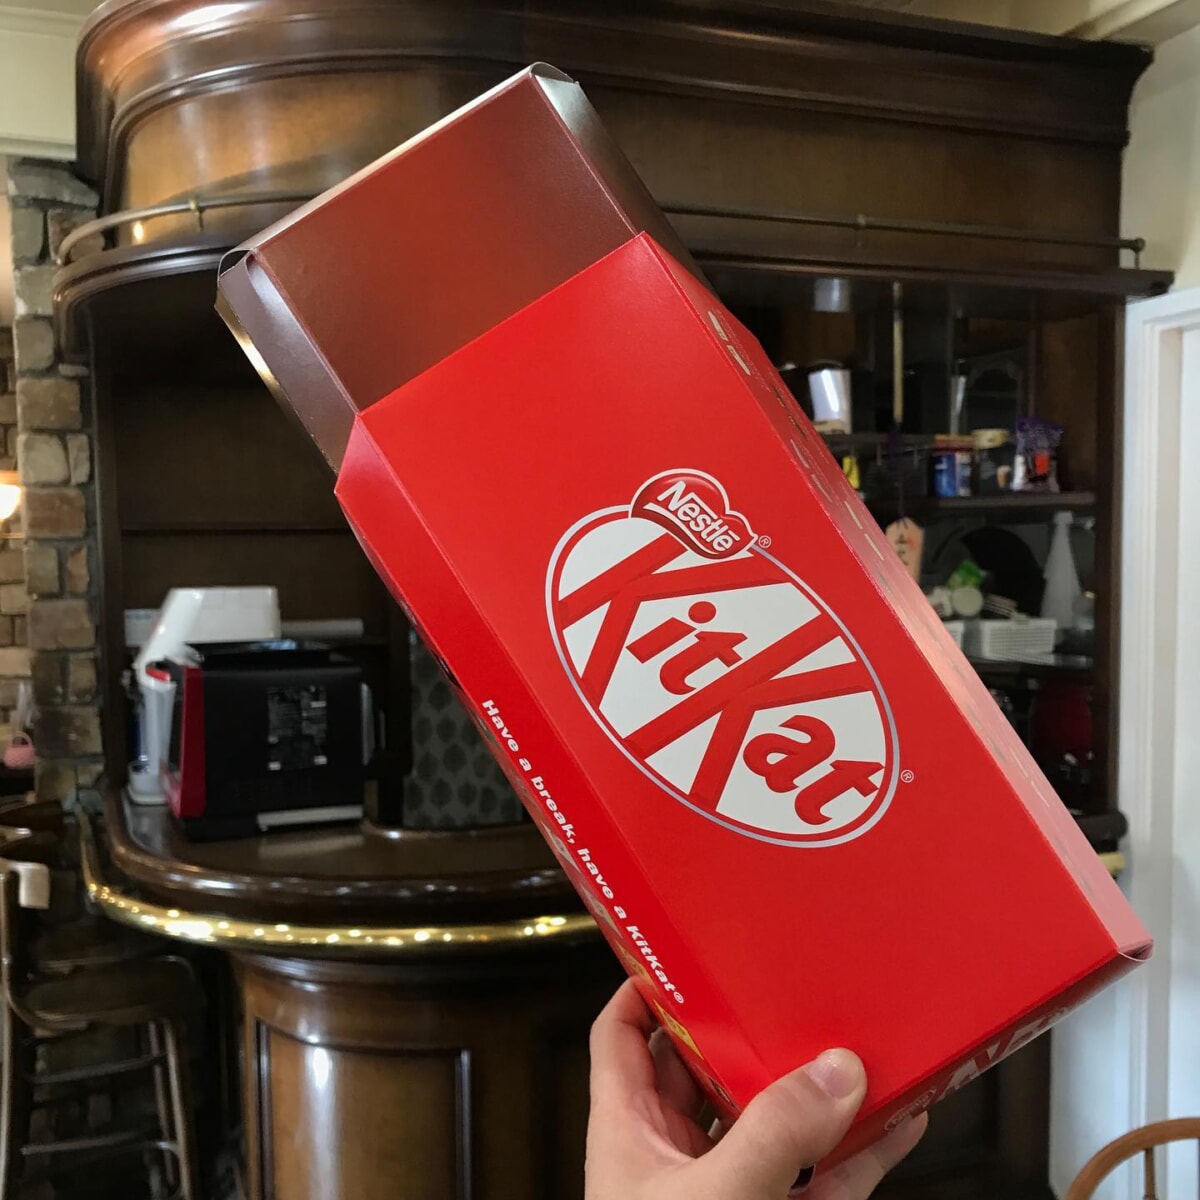 KitKatがデッカクなっちゃった！ハンドメイド市にピエロさんが来られて、マジックで #キットカット が大きくなりました❣っていうのは冗談🤭笑#ネスカフェアンバサダー で、#キットカットバラエティアソート という商品を購入しました。なんと、9種類63枚入りの#バラエティアソート なのだぁ〜キットカットをイメージしたスペシャルパッケージ定期便を利用している人は2700円そうでない人は2916円税込。ご見学者や打ち合わせ、その他、お茶菓子に、普段は #キットカットアーモンドクランベリー をお出ししております。しばらくは、9種類をガチャ式で、楽しんでもらおうかな？雨の日、または、SNS投稿で、#ワンドリンクサービス を随時サービス提供しております♪よろしくネ#マイスタ加古川 #兵庫県 #加古川市 #加古川 #コワーキングスペース #コワーキング #モノづくりスペース #モノづくり #繋がれる場所 #プラットフォーム #ほぼ日刊マイスタ通信 - Instagram投稿